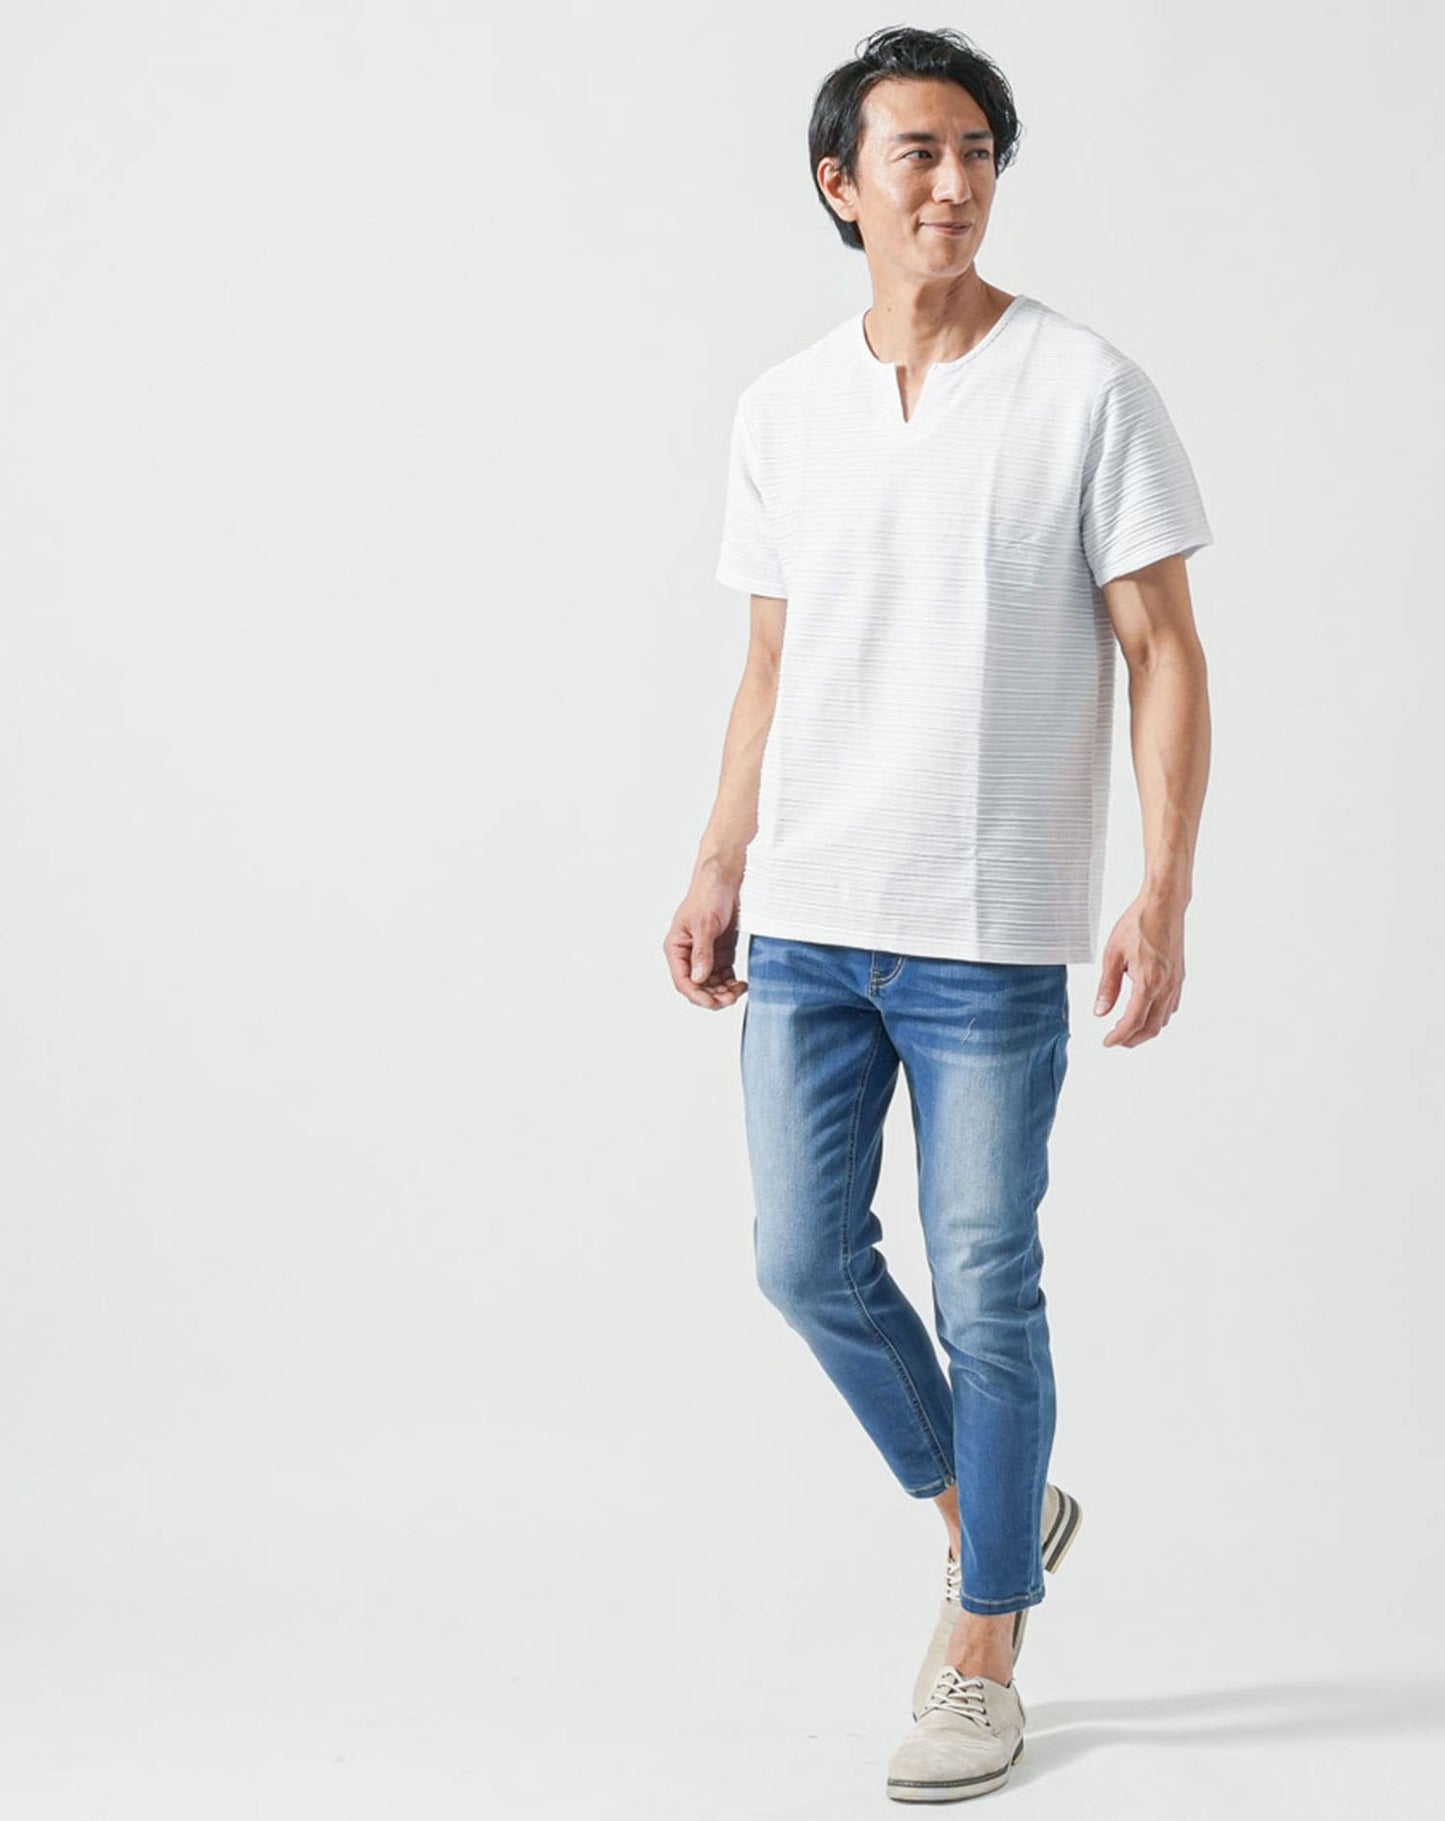 40代メンズ夏服全身3点コーデセット　グレー5分袖パーカー×白半袖キーネックTシャツ×ブルーアンクルデニムパンツ